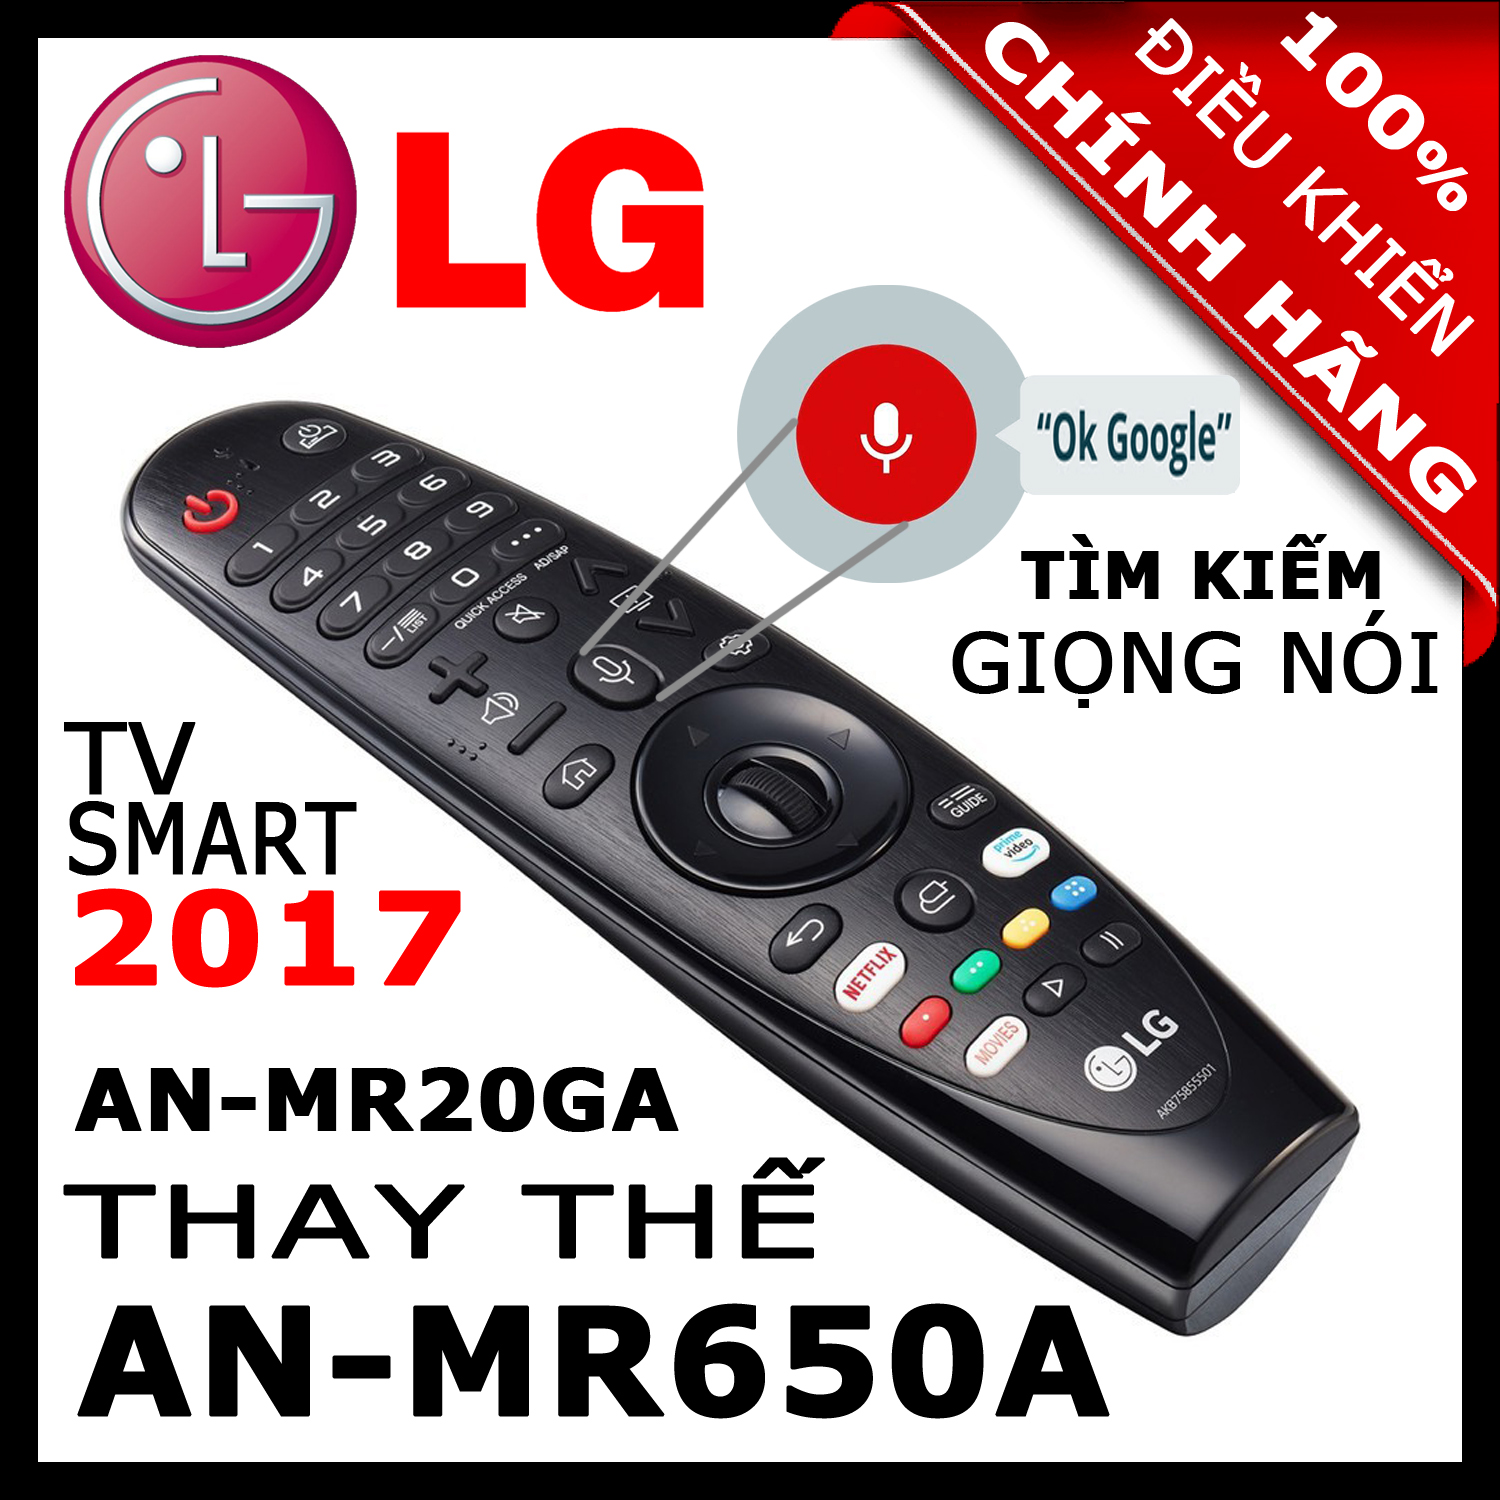 ĐIỀU KHIỂN Remote Tivi LG MR20GA thay thế MR19BA và MR18BA và MR650A có Giọng nói Chuột bay cho tivi LG 2020 2019 2018 2017 Magic Remote AN-MR20GA mã số AKB75855501 HÀNG XỊN. Remote cho tivi LG sản xuất năm 2017